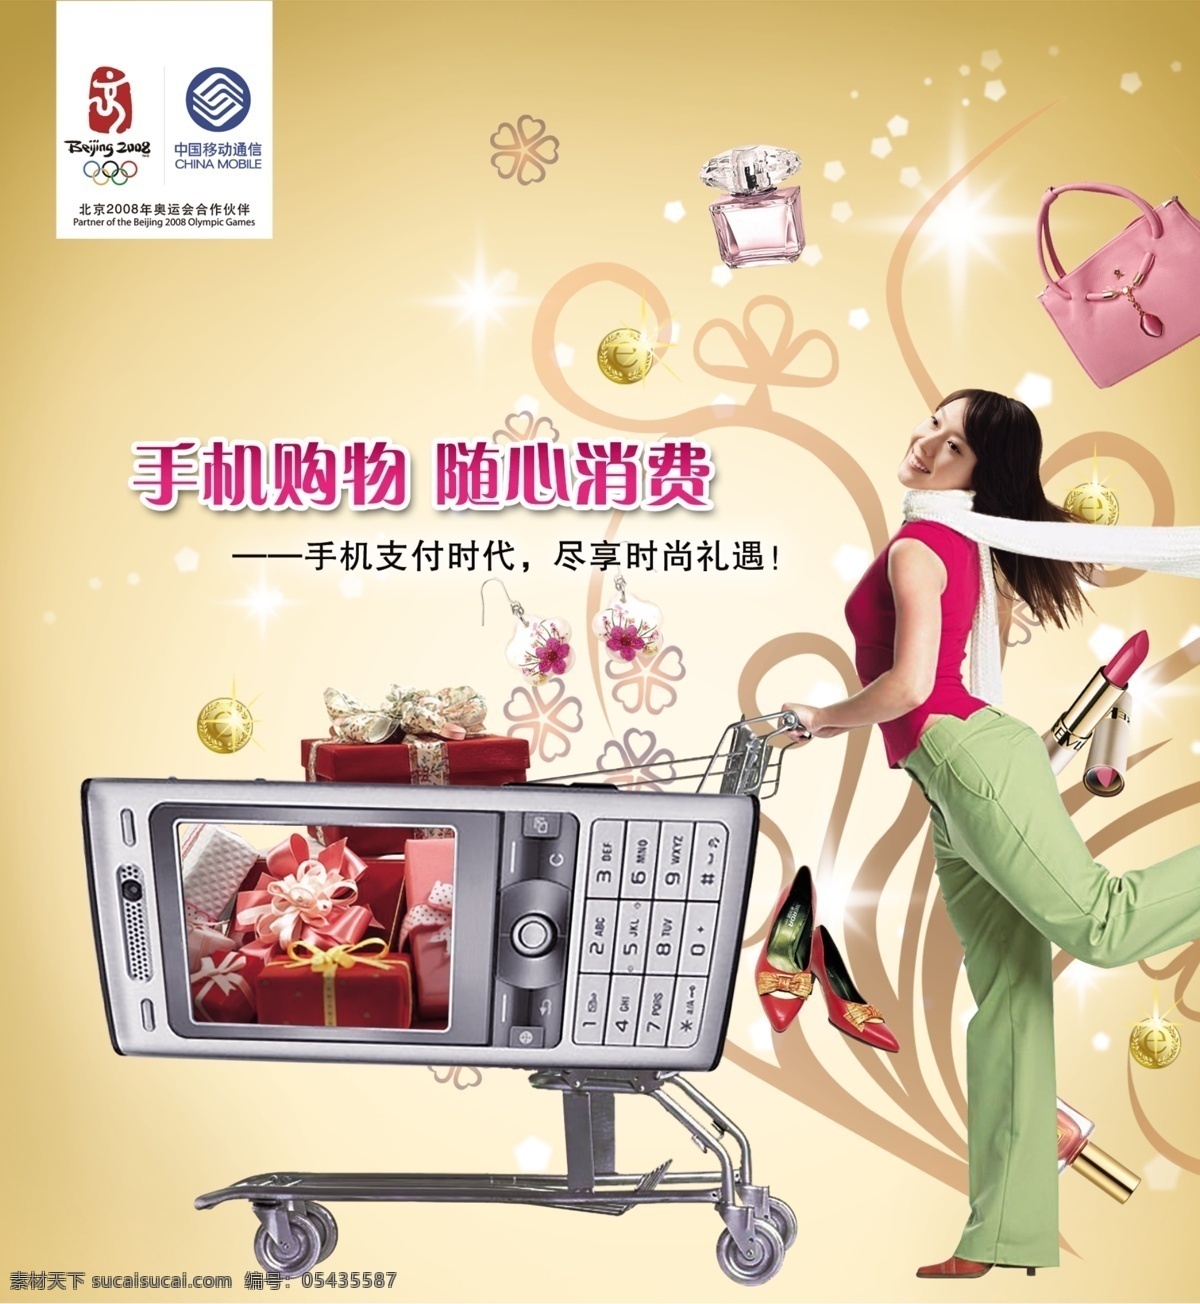 移动 手机 购物 海报 购物车 美女 中国移动广告 中国移动 其他海报设计